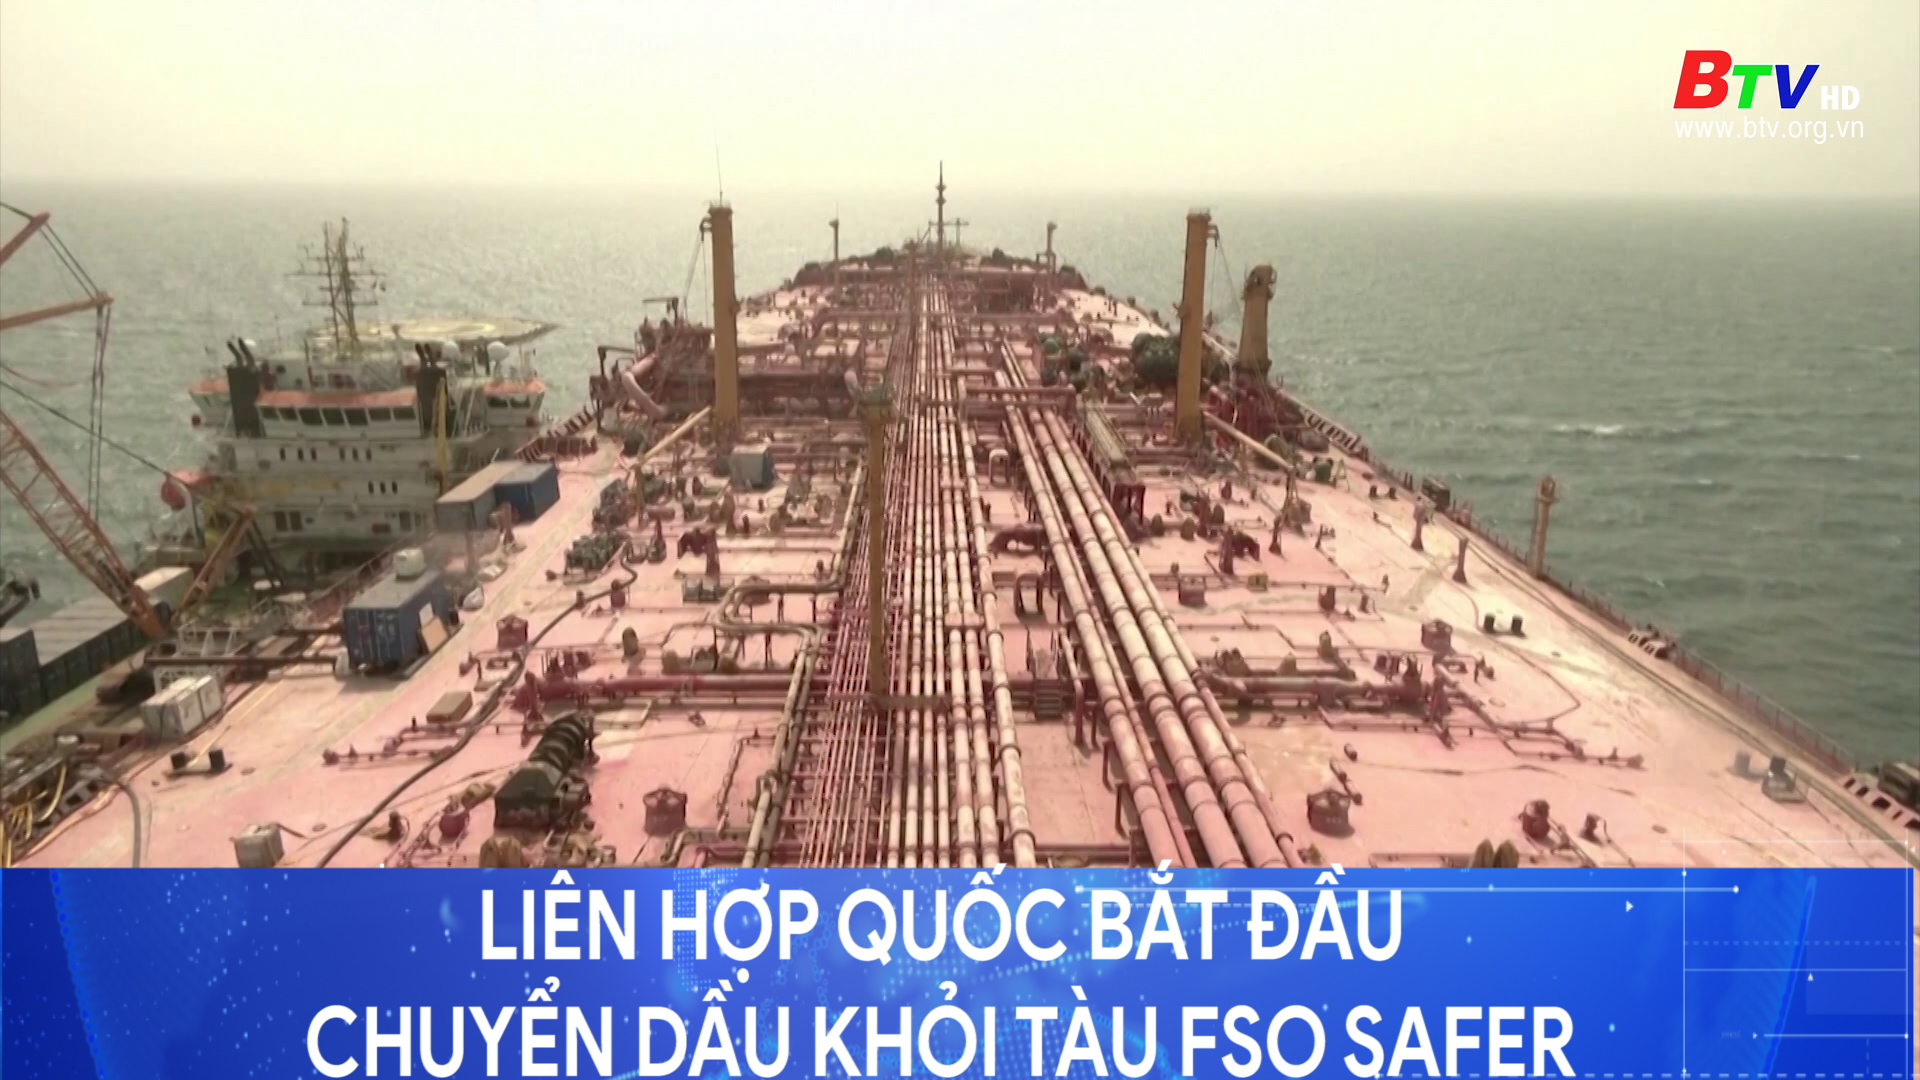 	Liên hợp quốc bắt đầu chuyển dầu khỏi tàu Fso Safer